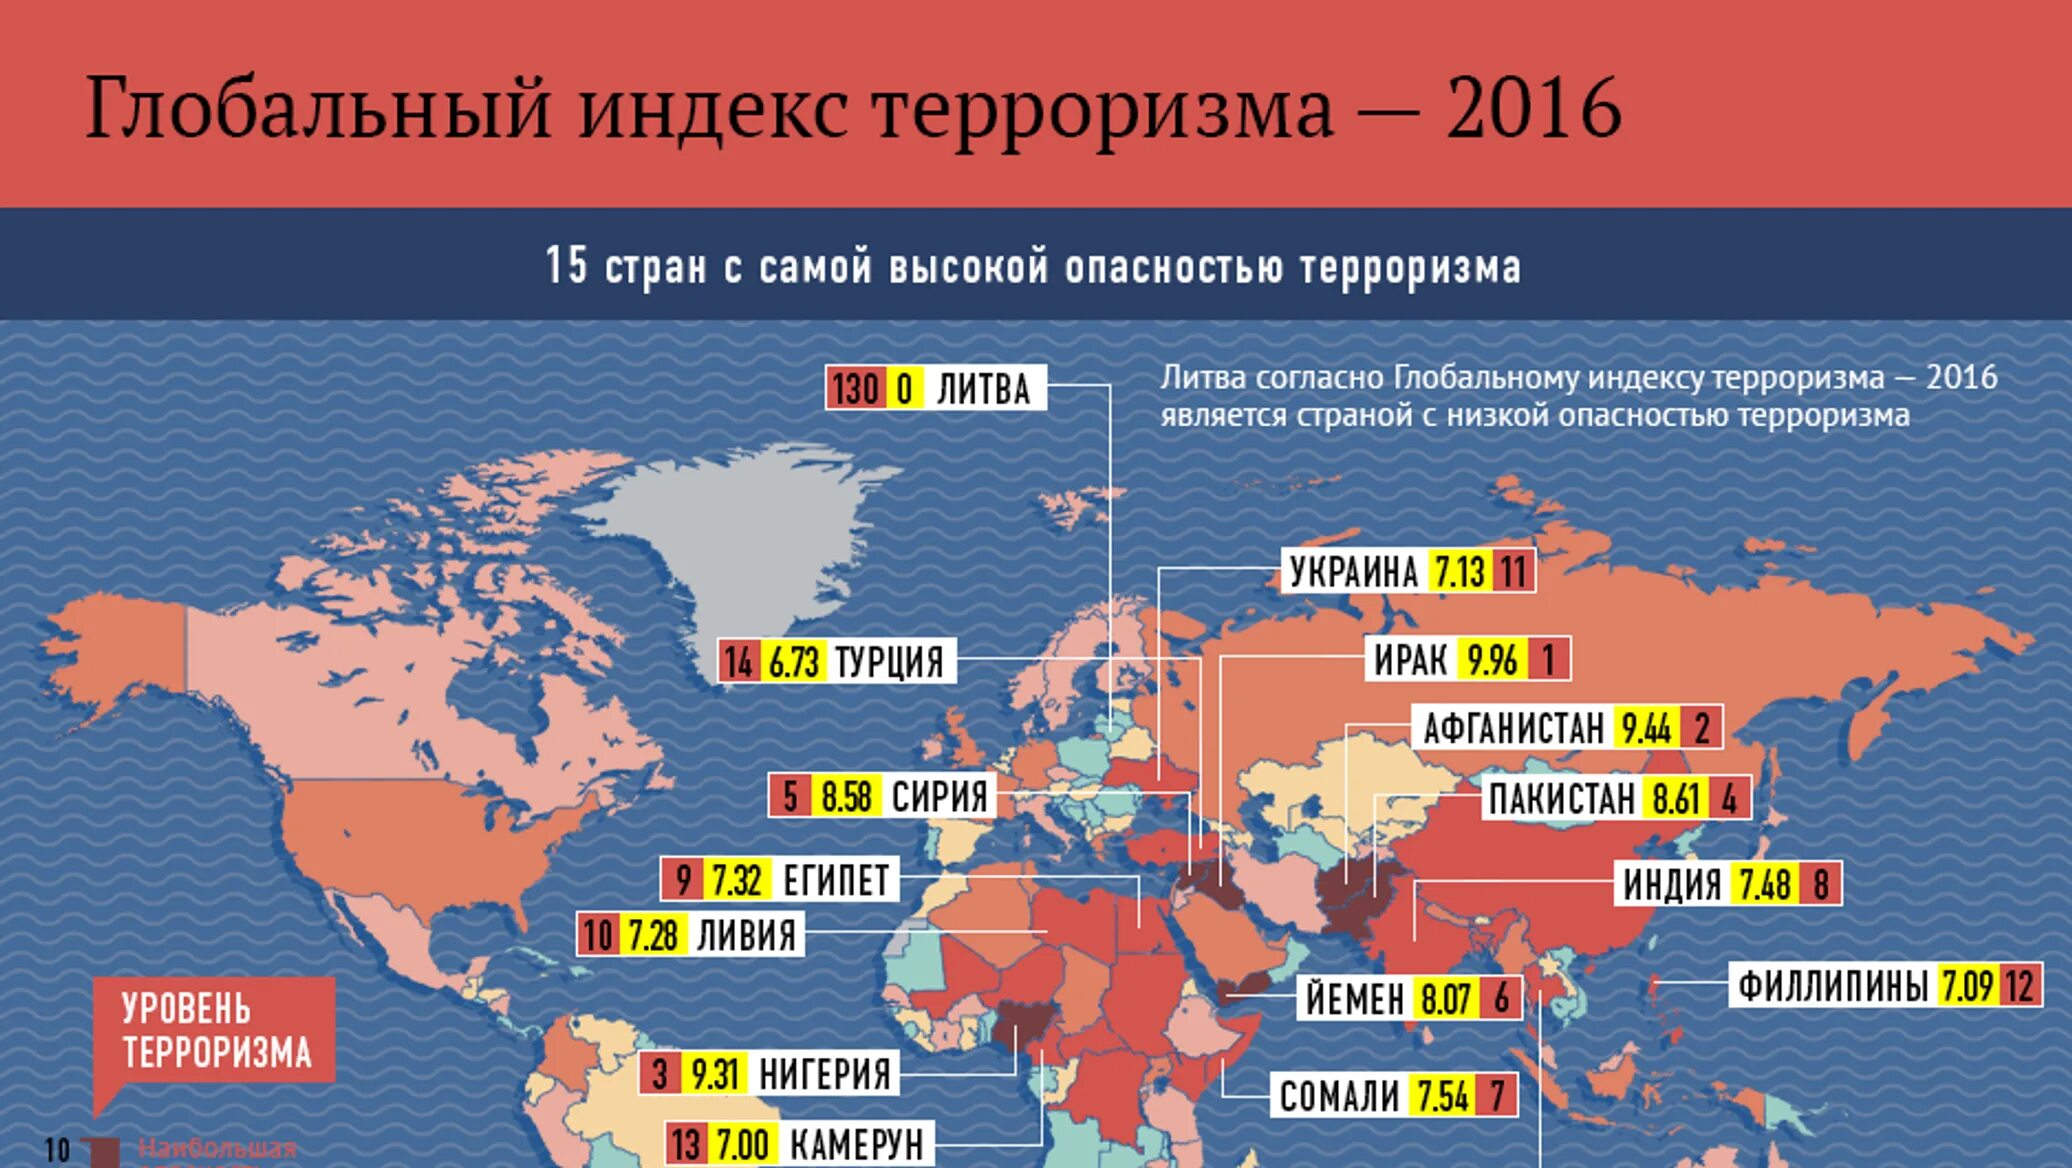 Последние террористические акты в россии 10 лет. Рейтинг стран по уровню терроризма. Статистика преступности по странам.